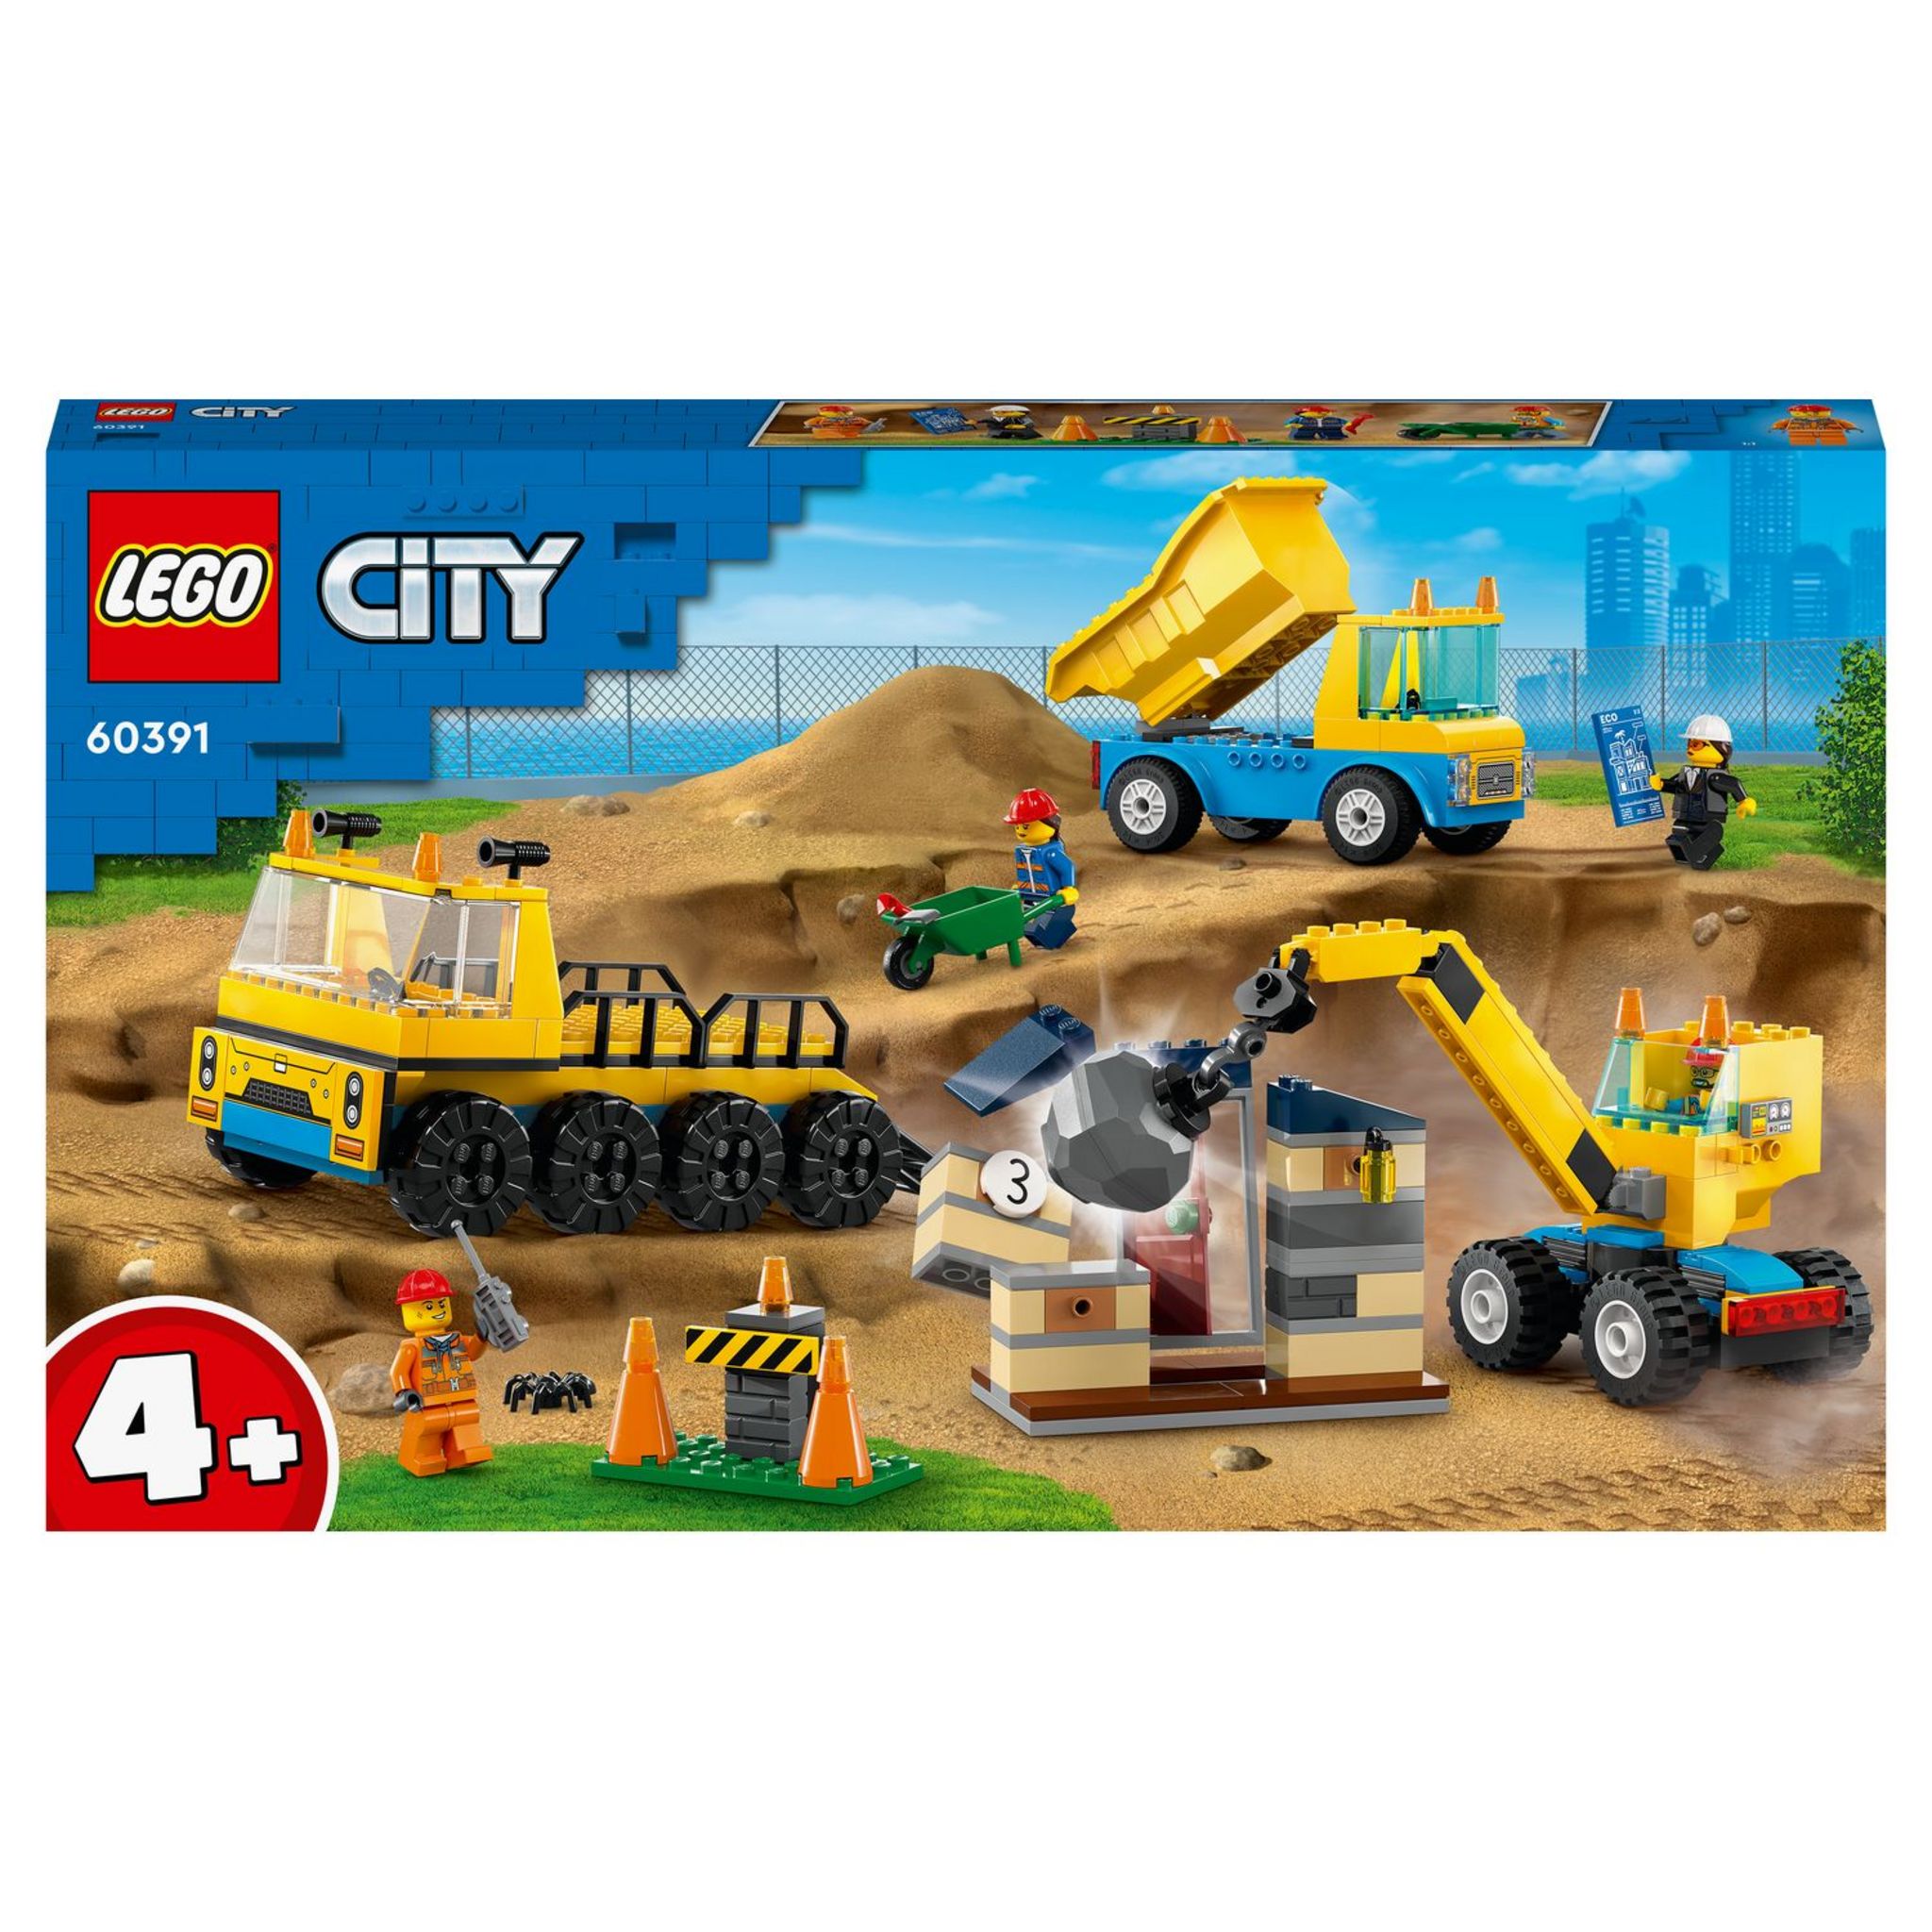 LEGO City 60362 - La Station de Lavage, Jouet pour Enfants Dès 6 Ans,  Garçons, Filles, Set avec Brosses à Laver Rotatives, Voiture et 2  Minifigurines pas cher 